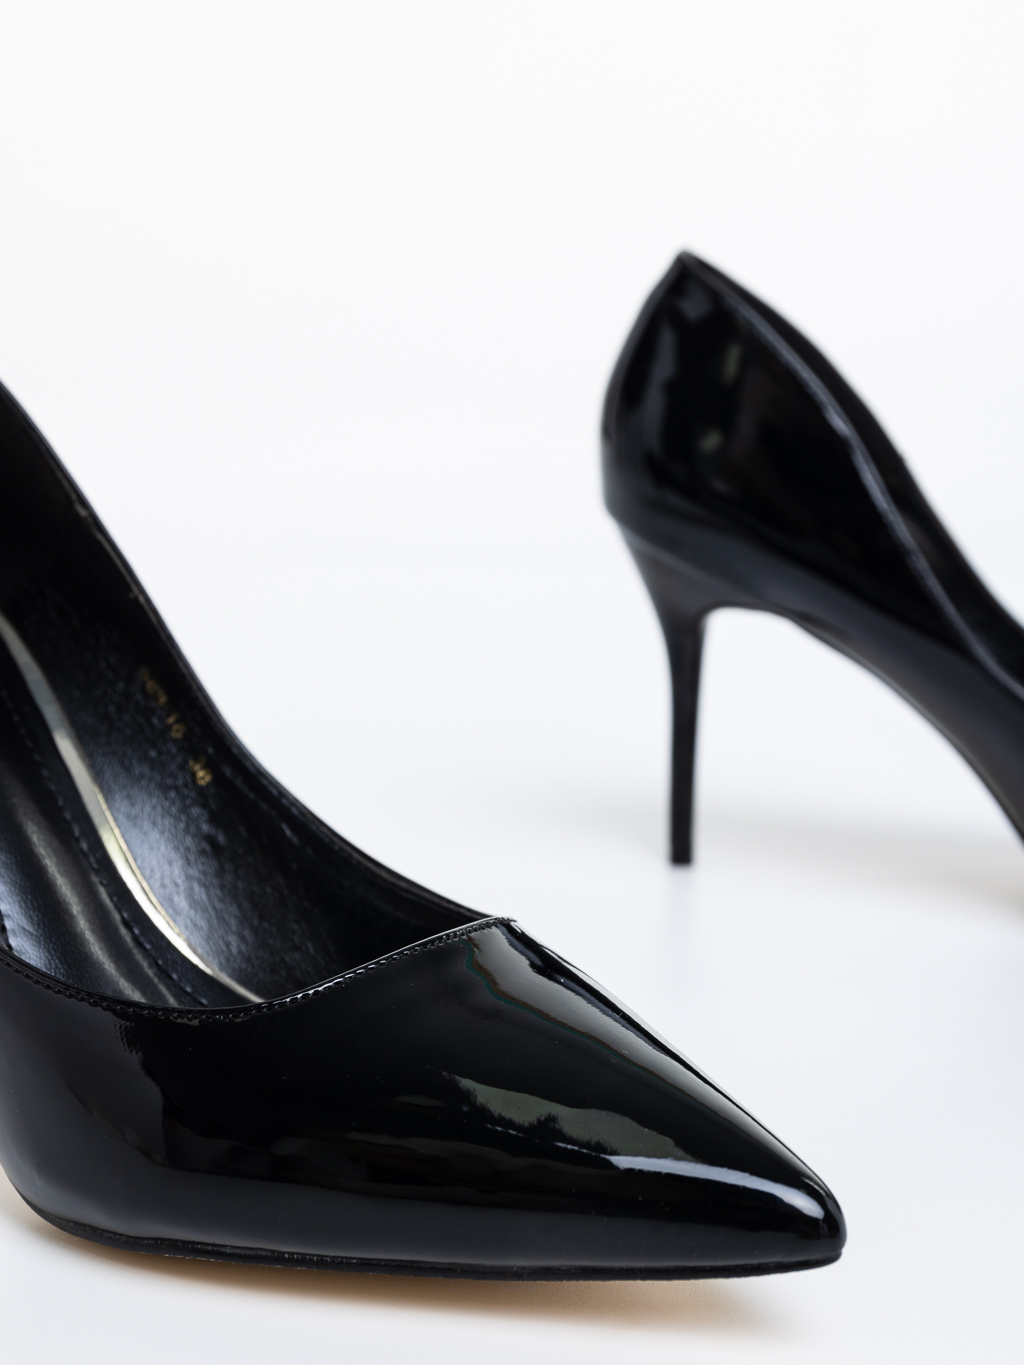 Pantofi dama negri cu toc din piele eecologica lacuita Kesara, 6 - Kalapod.net